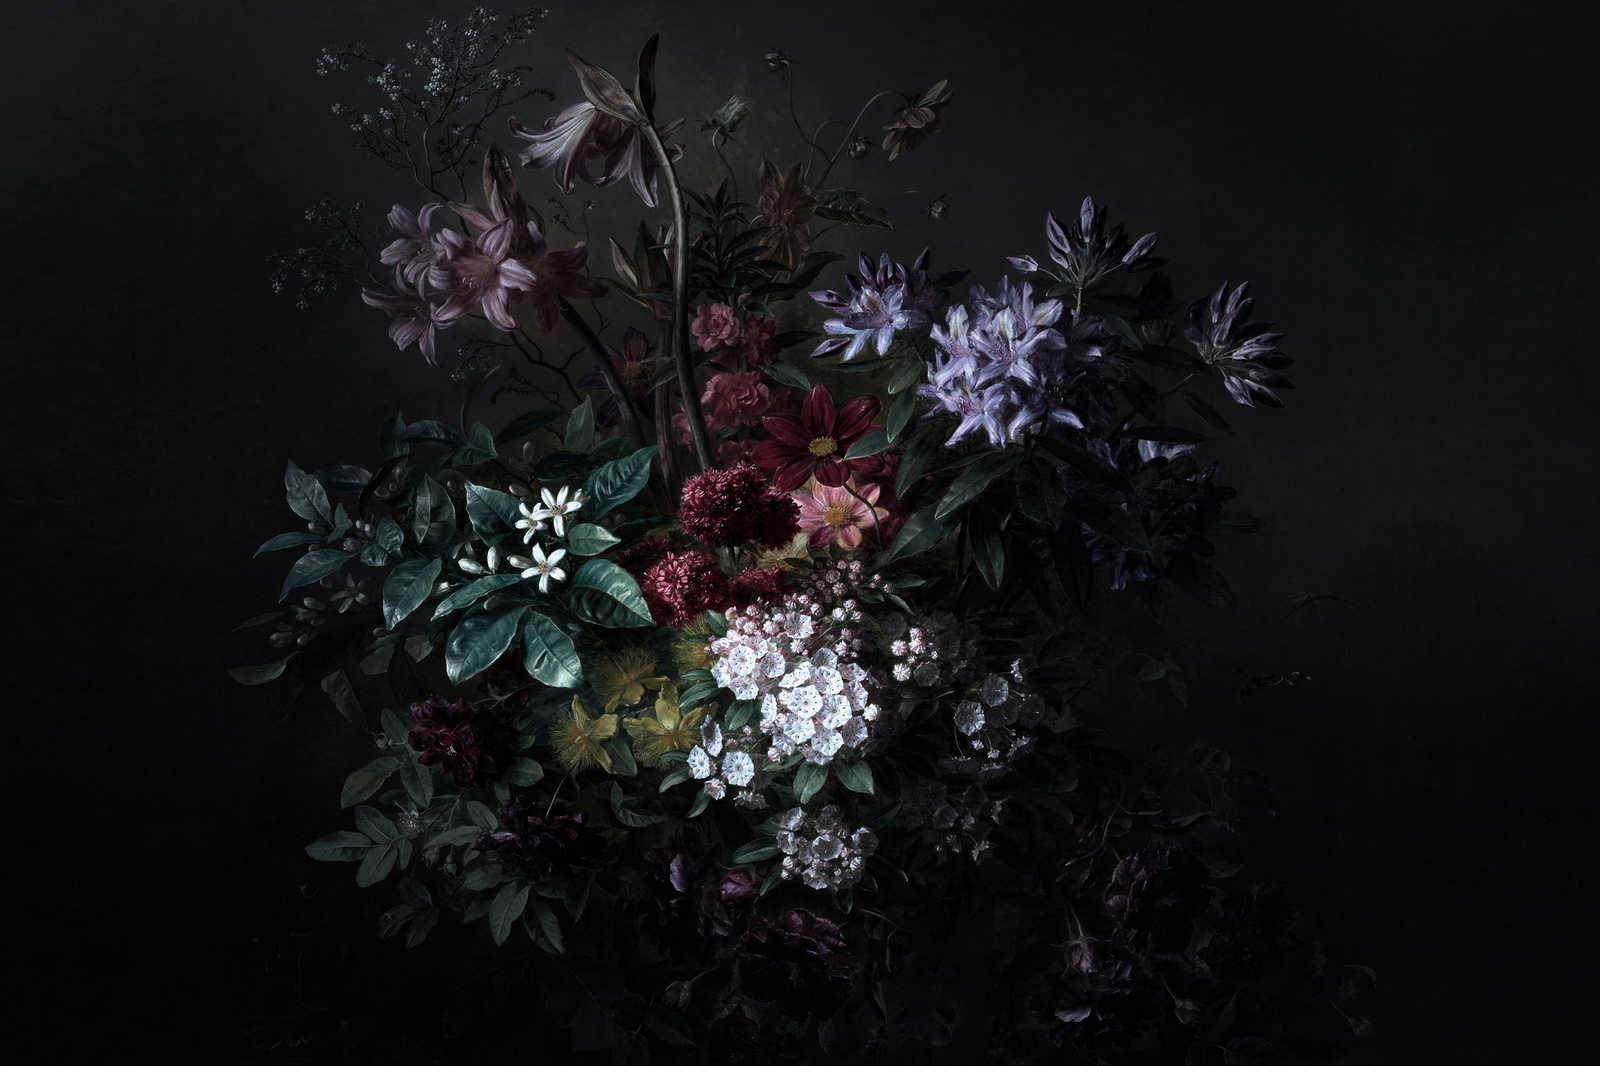             Blumen Leinwandbild Rosen Stillleben – 0,90 m x 0,60 m
        